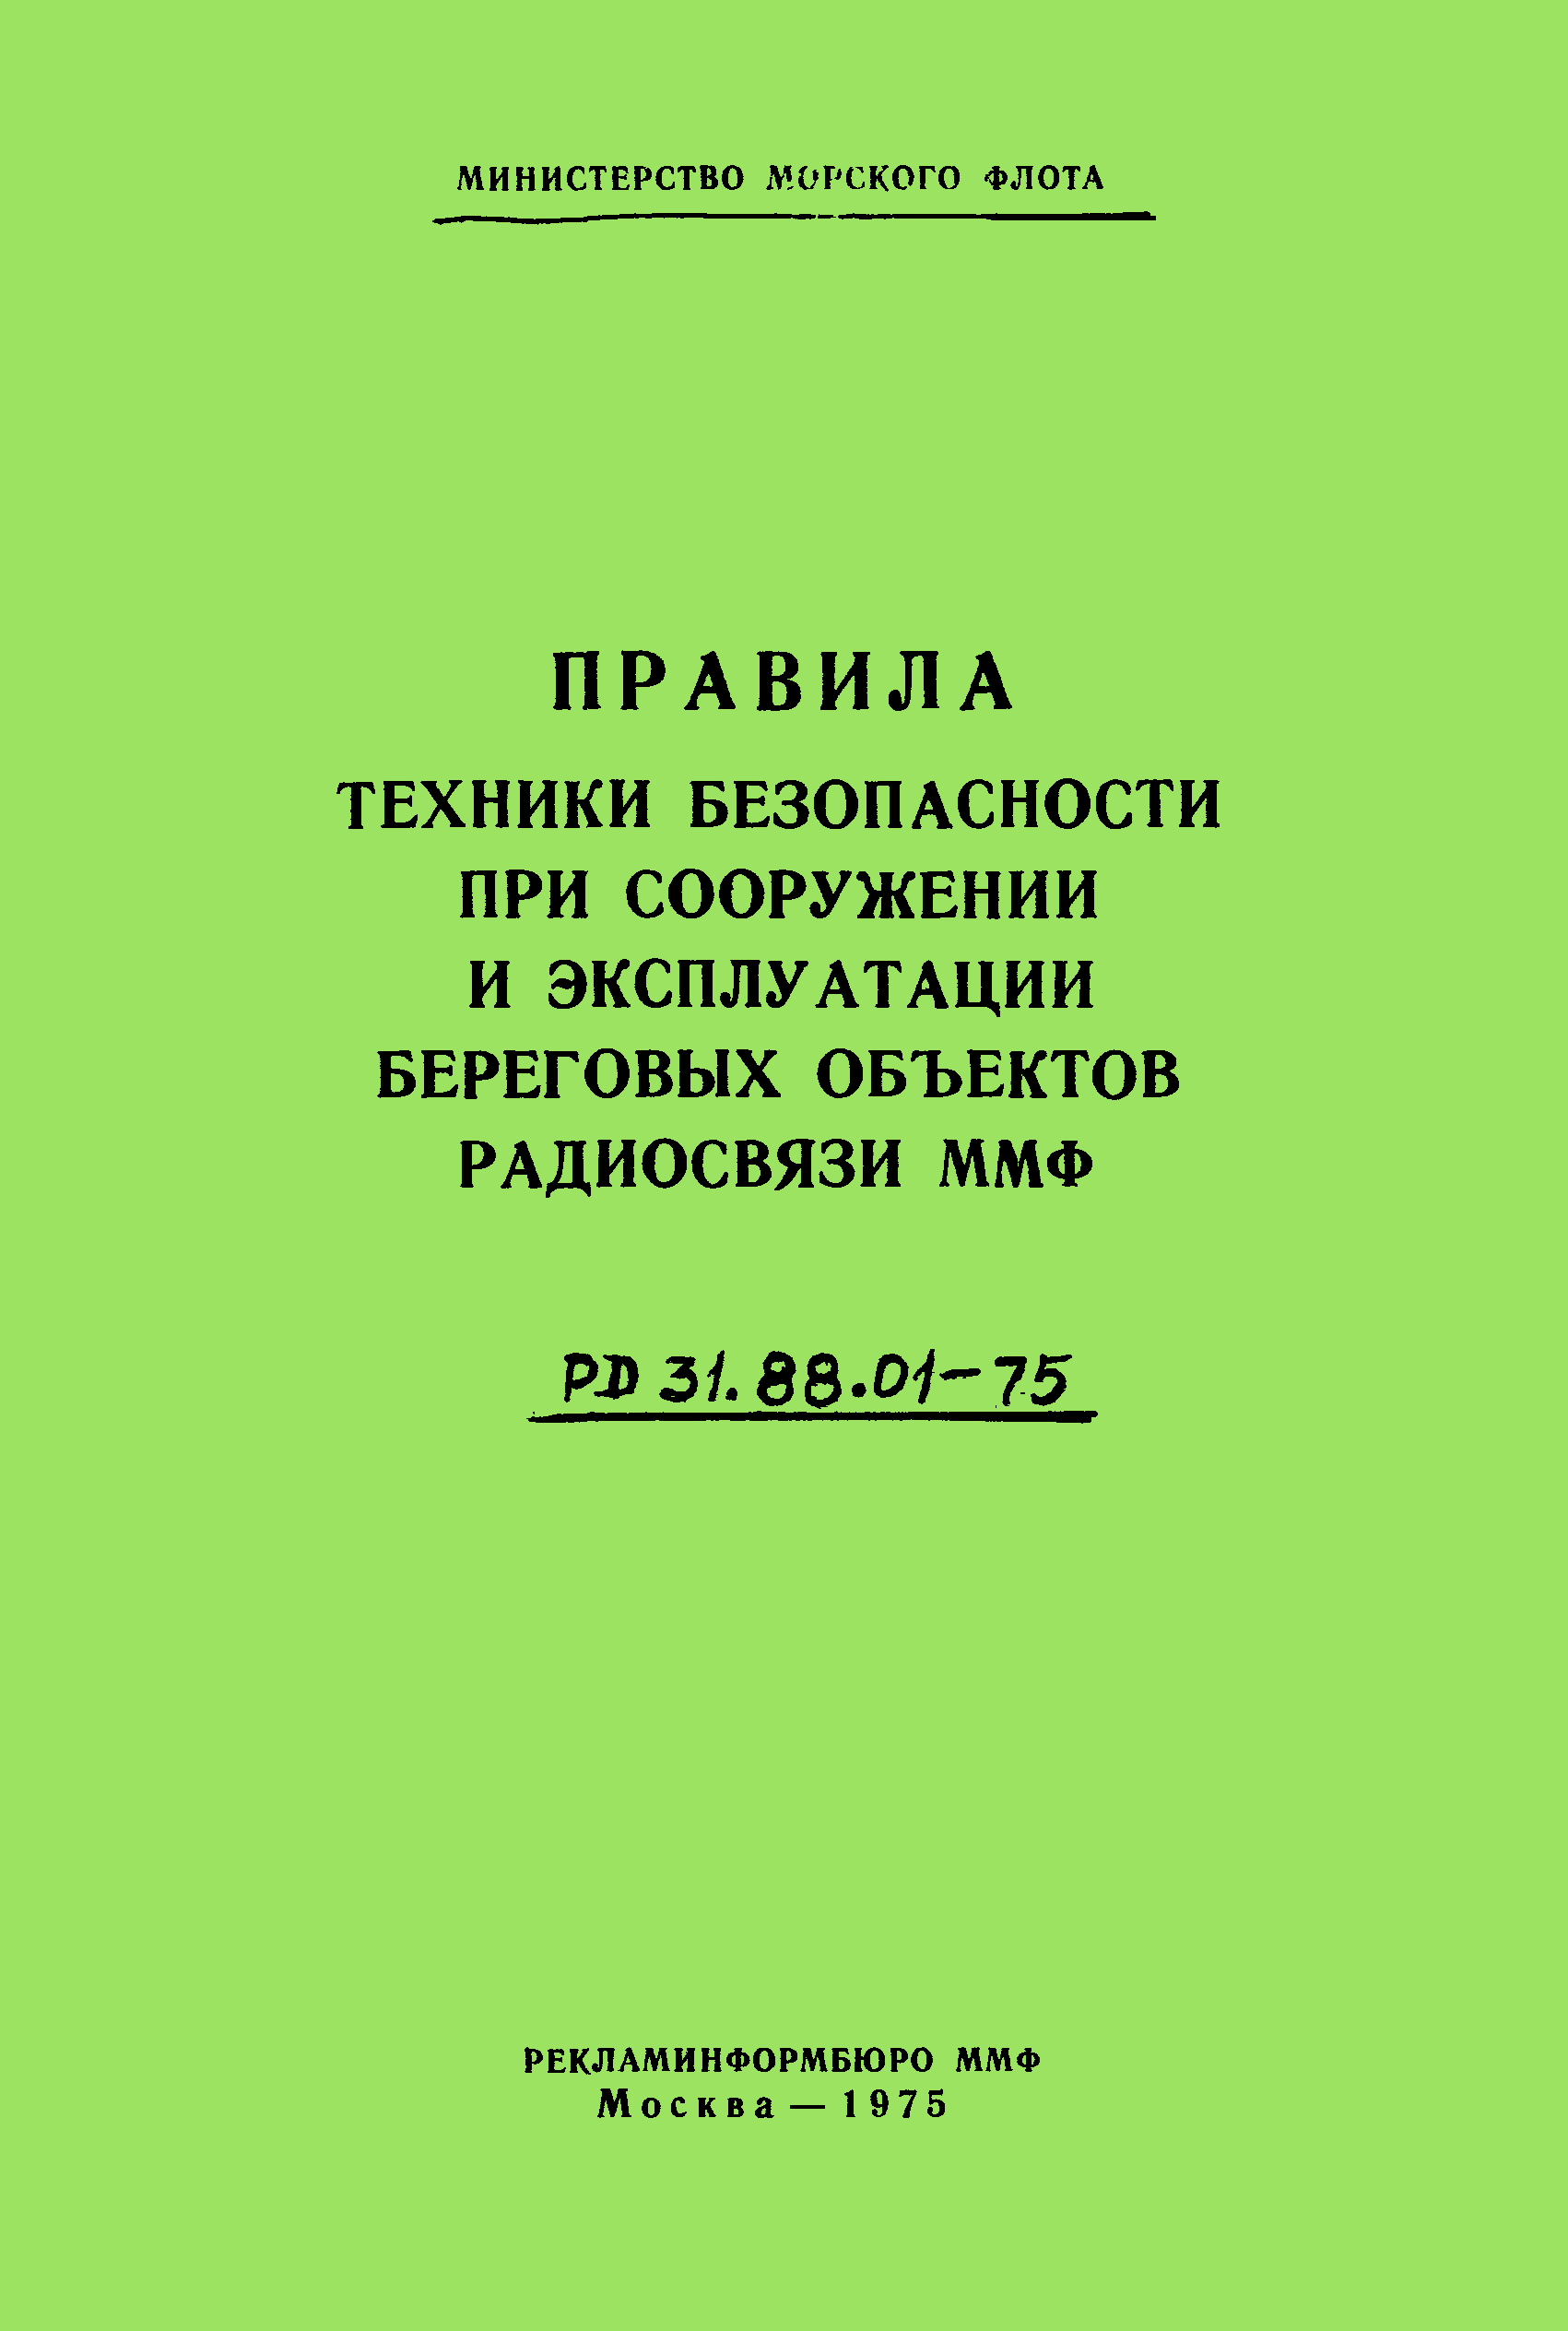 РД 31.88.01-75